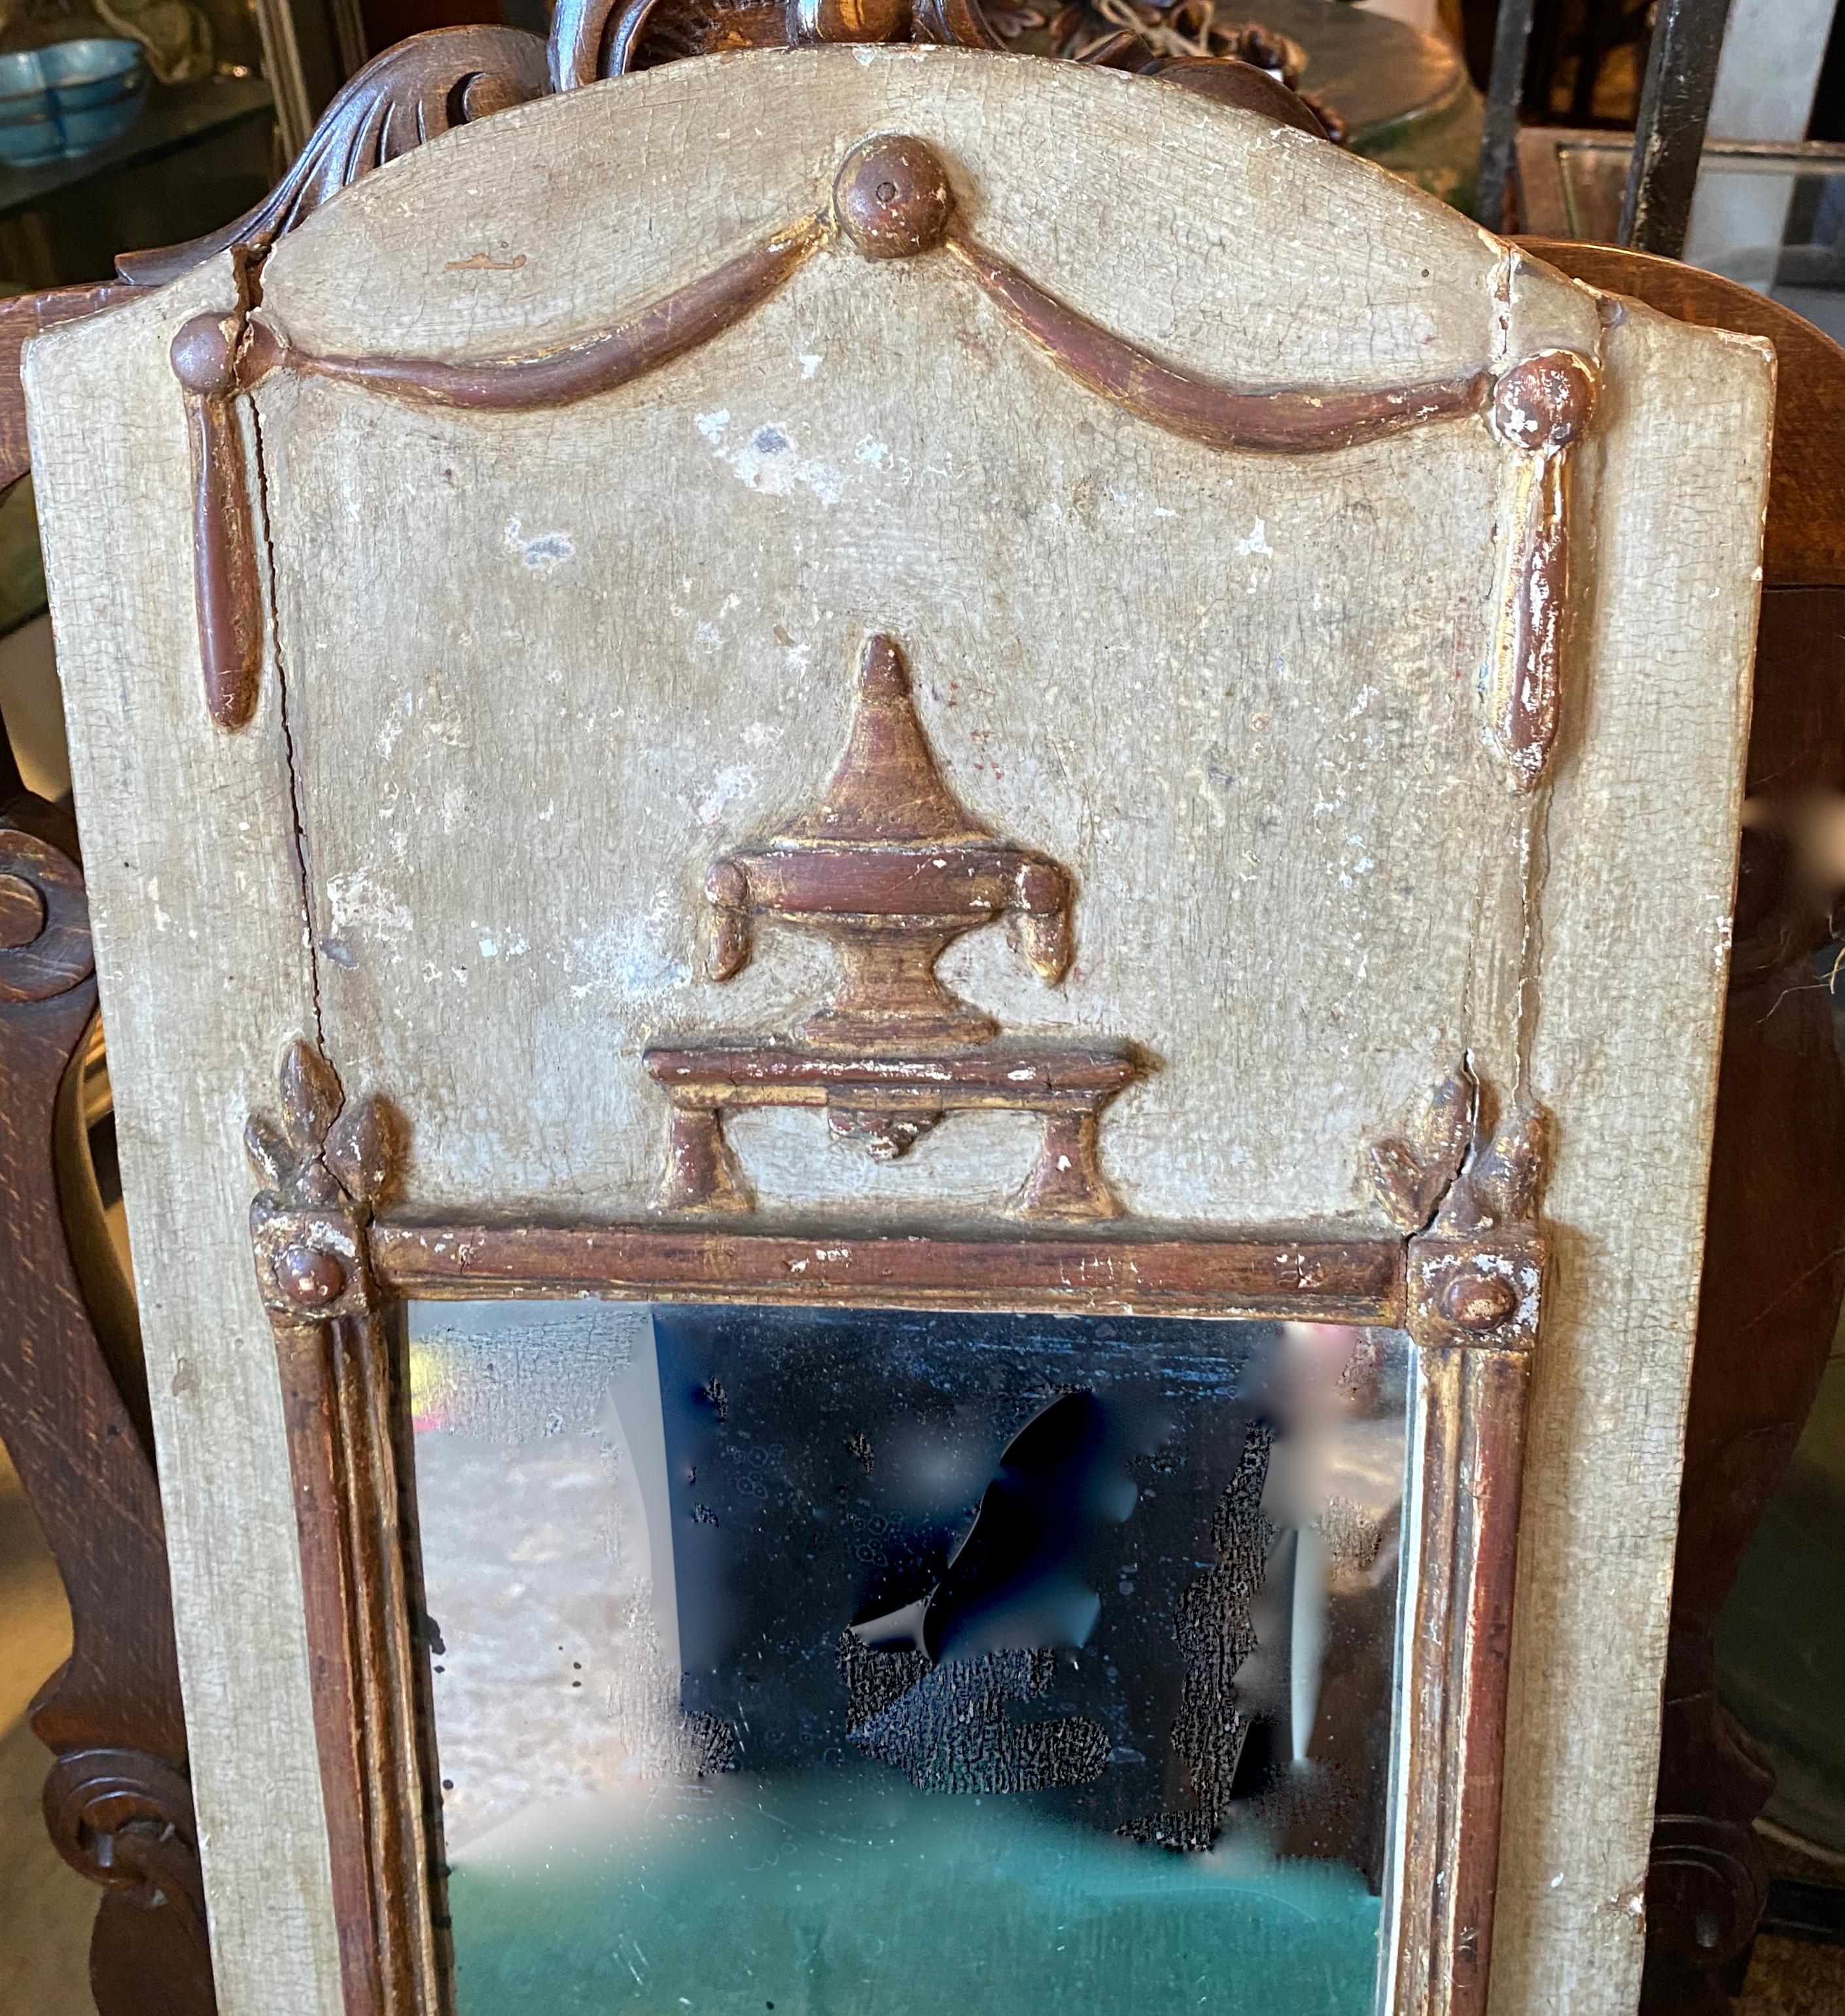 Dies ist ein charmanter neoklassizistischer Hochzeitsspiegel aus dem späten 18. Dieses Petit Trumeau hat seine ursprüngliche bemalte, vergoldete Oberfläche und seinen Spiegel behalten und eine wunderbare, tiefe, natürliche Patina